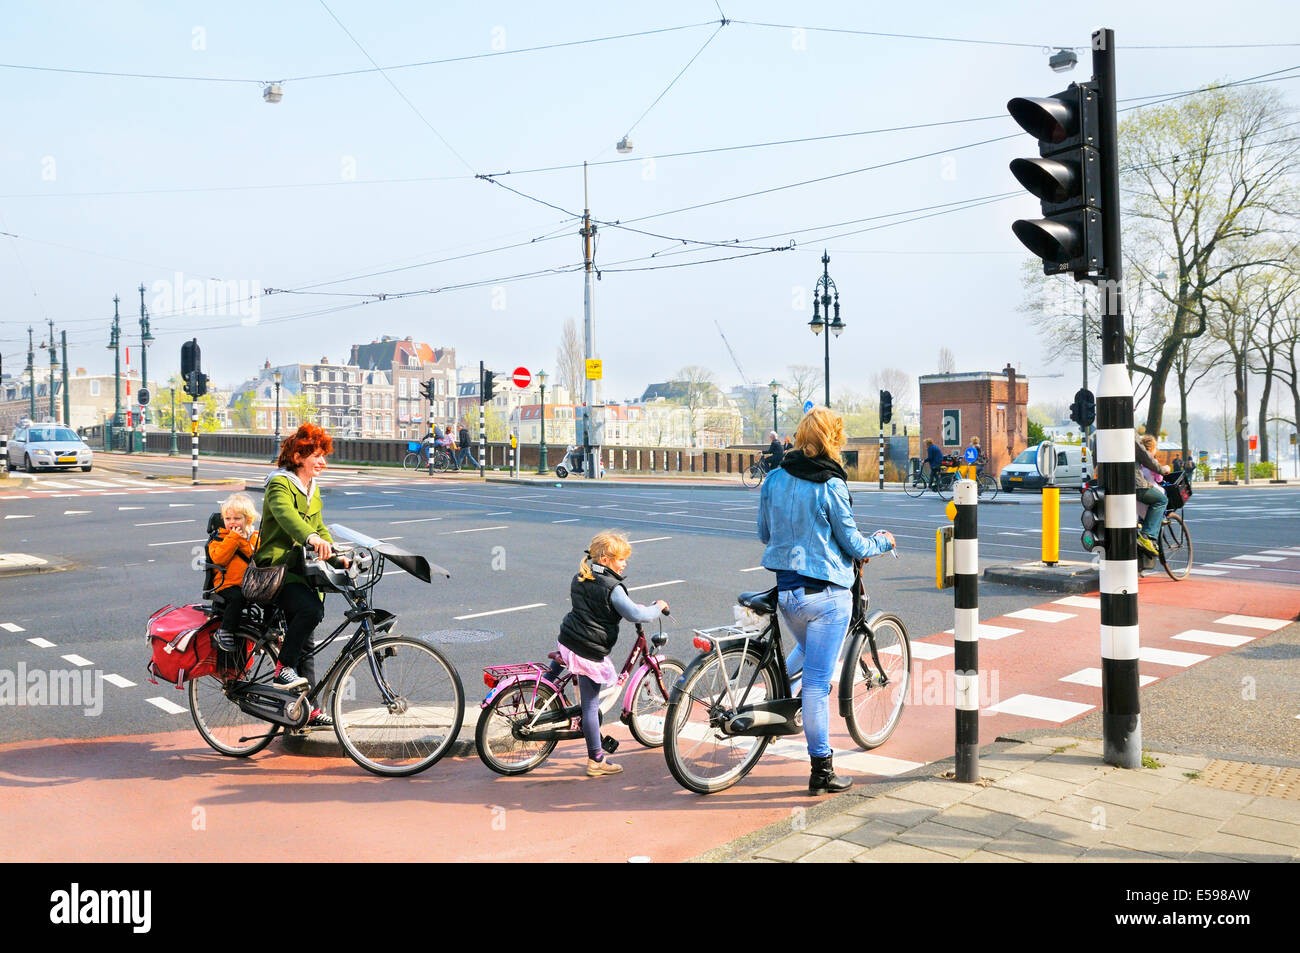 Les femmes et les enfants sur des vélos en attente à un franchissement routier, Amsterdam, Pays-Bas Banque D'Images